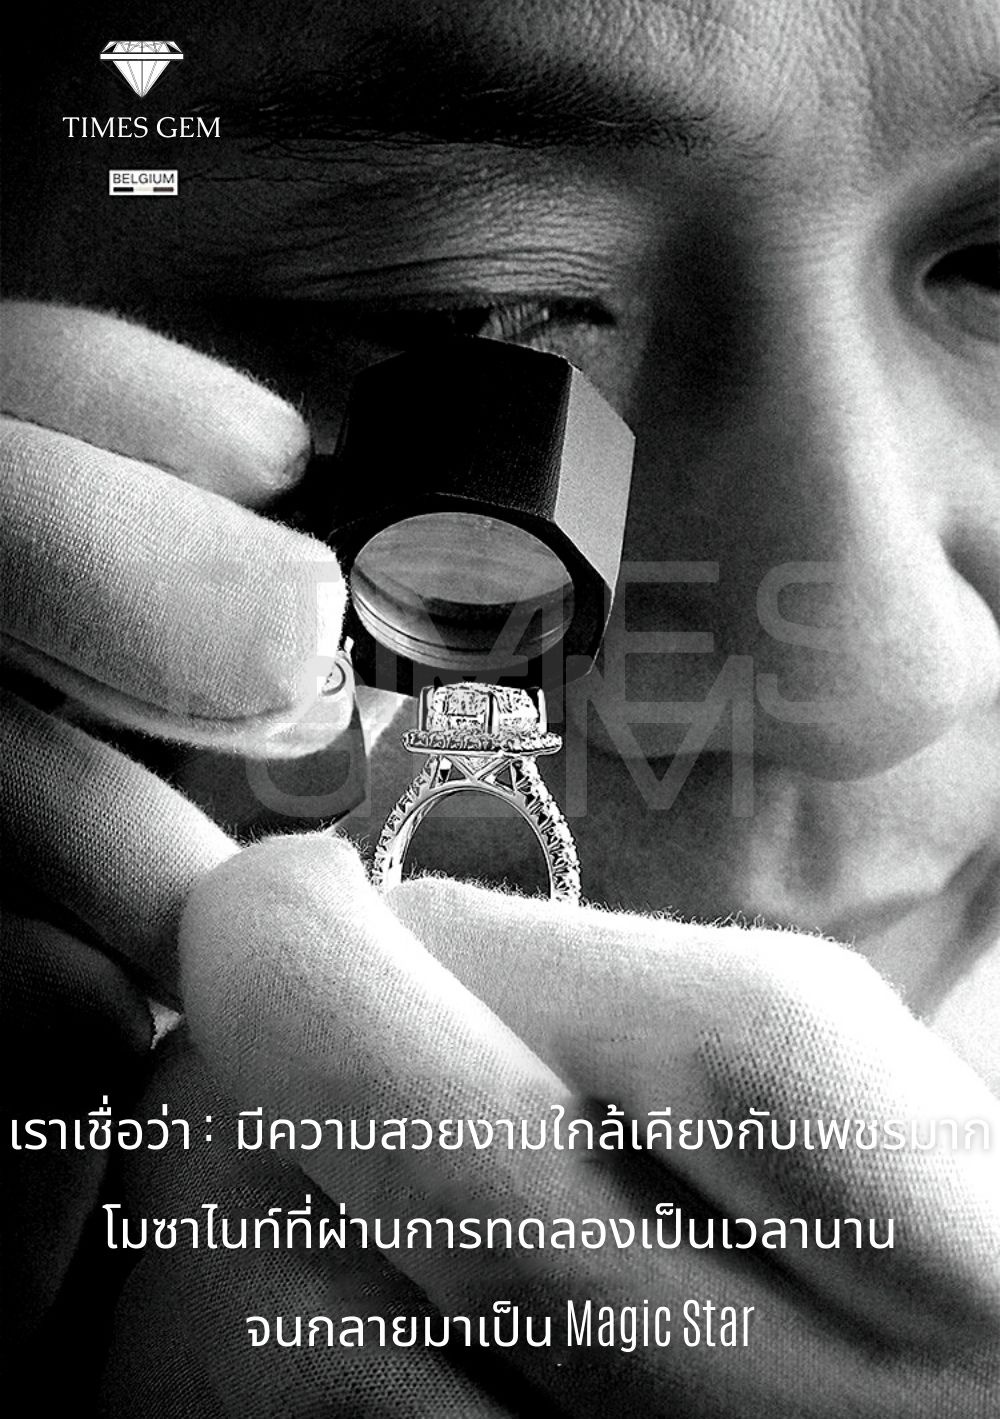 รูปภาพเพิ่มเติมเกี่ยวกับ Times Gem แหวนเงินแท้ 925 แหวนเพชรผู้หญิง ช่องเปิดปรับได้ เครื่องประดับแฟชั่นญี่ปุ่นและเกาหลี KMR005 05